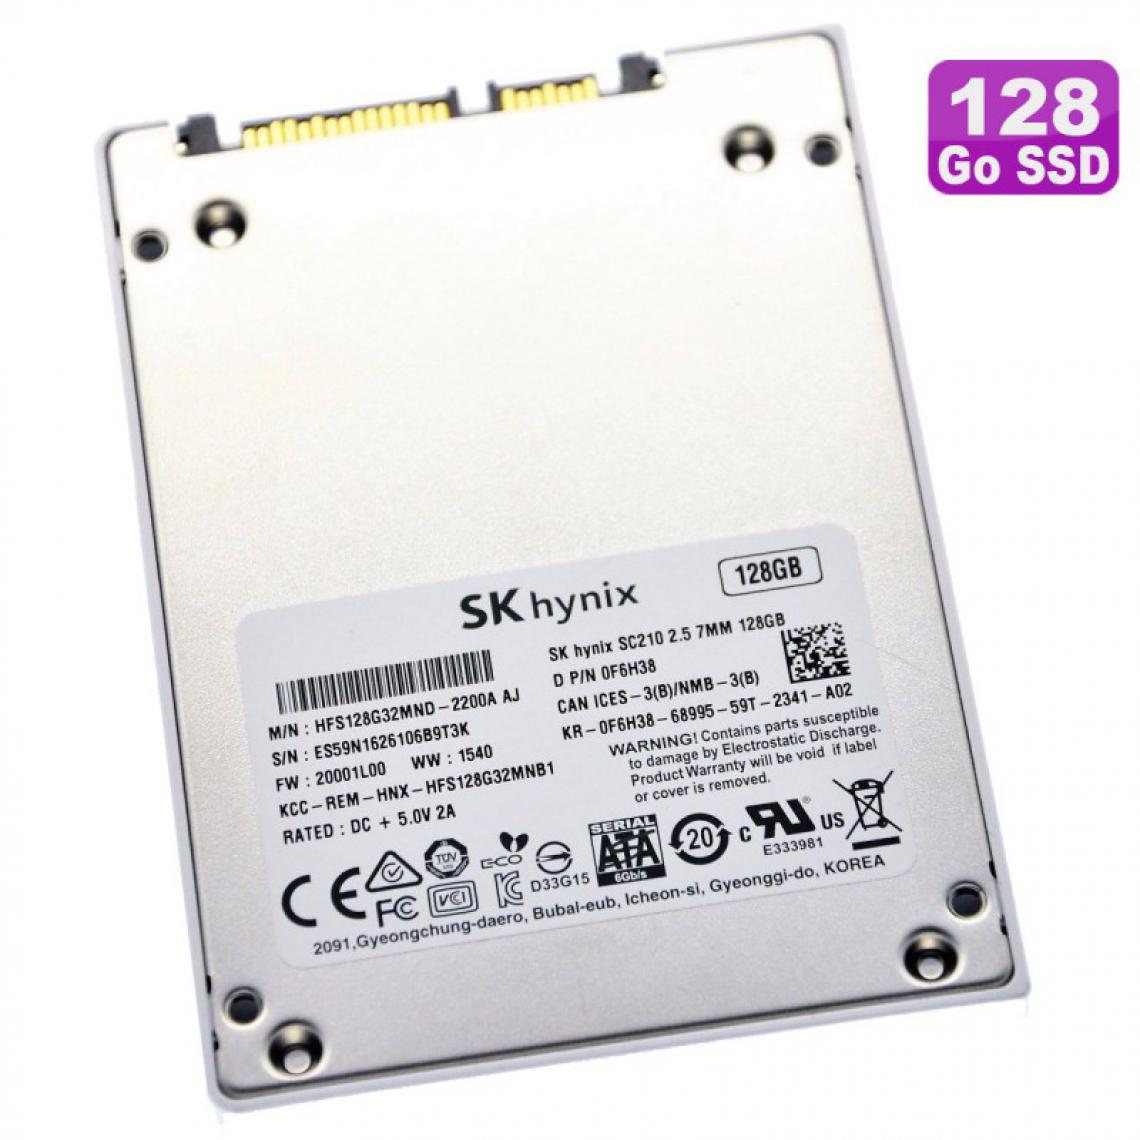 Hynix - SSD 128Go 2.5" SK hynix HFS128G32MND-2200A 0F6H38 F6H38 - Disque Dur interne